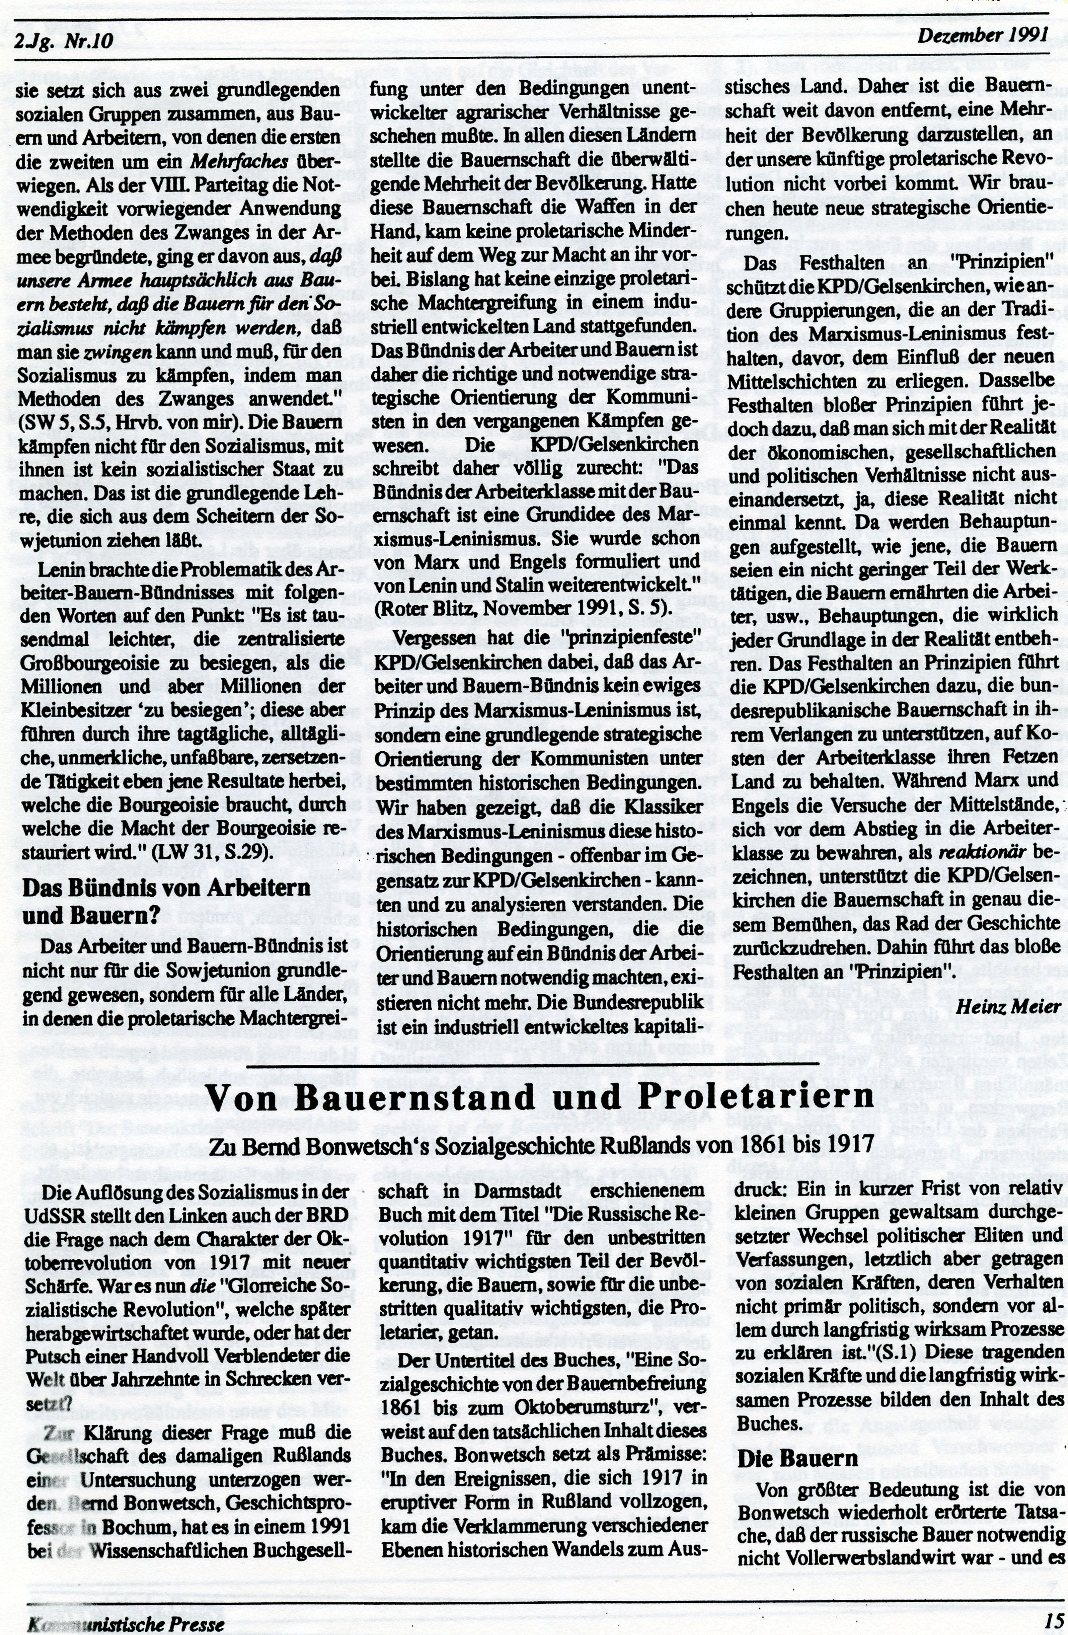 Gelsenkirchen_Kommunistische_Presse_1991_10_015